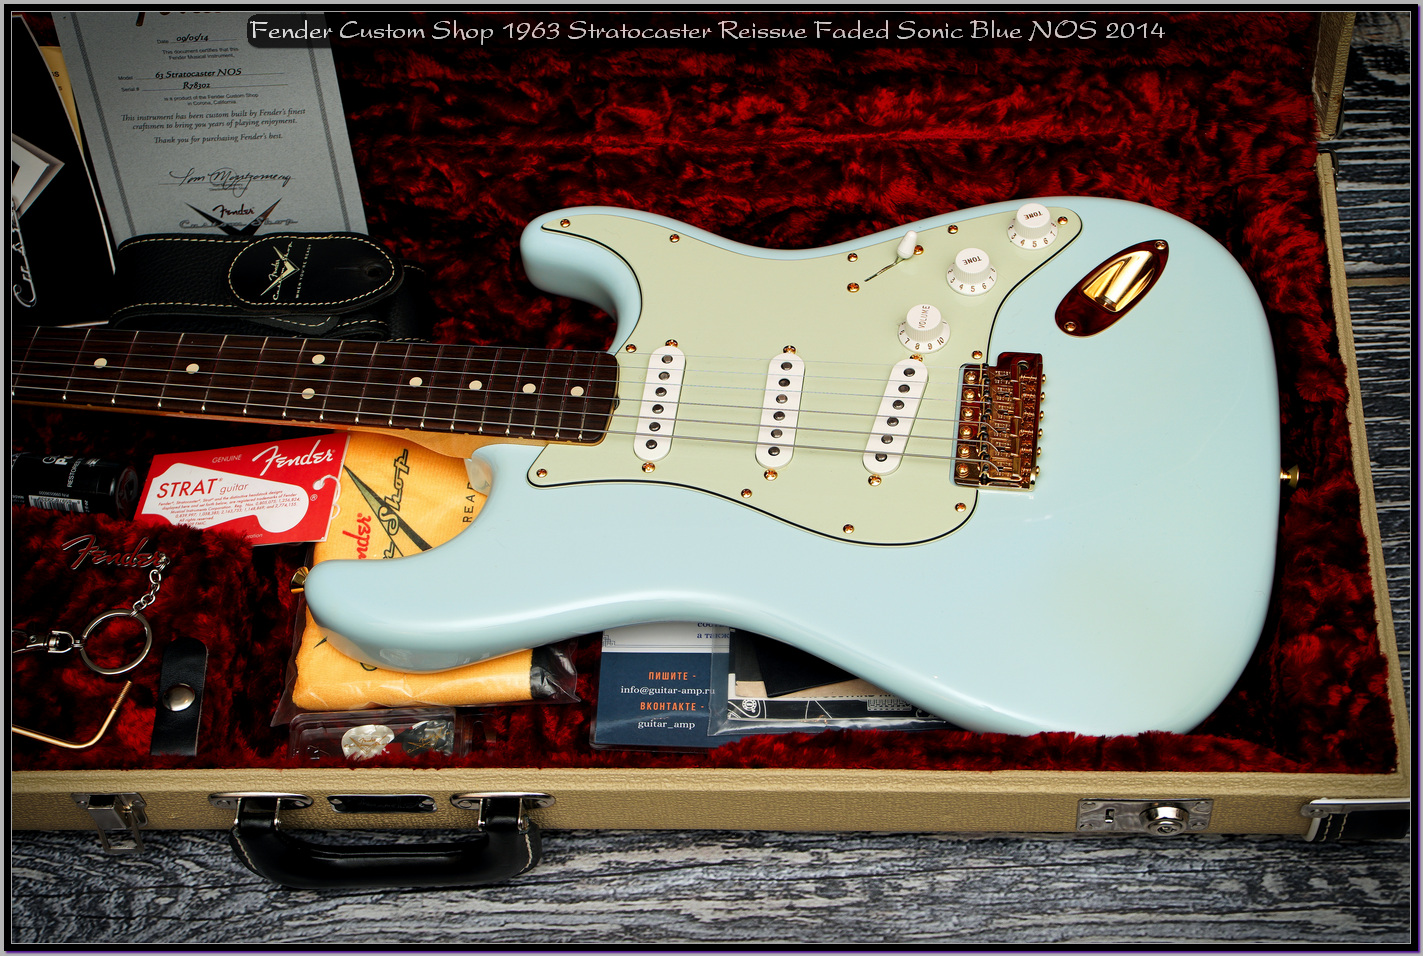 Fender Custom Shop 1963 Stratocaster Reissue Faded Sonic Blue NOS 2014 10_x1400.jpg